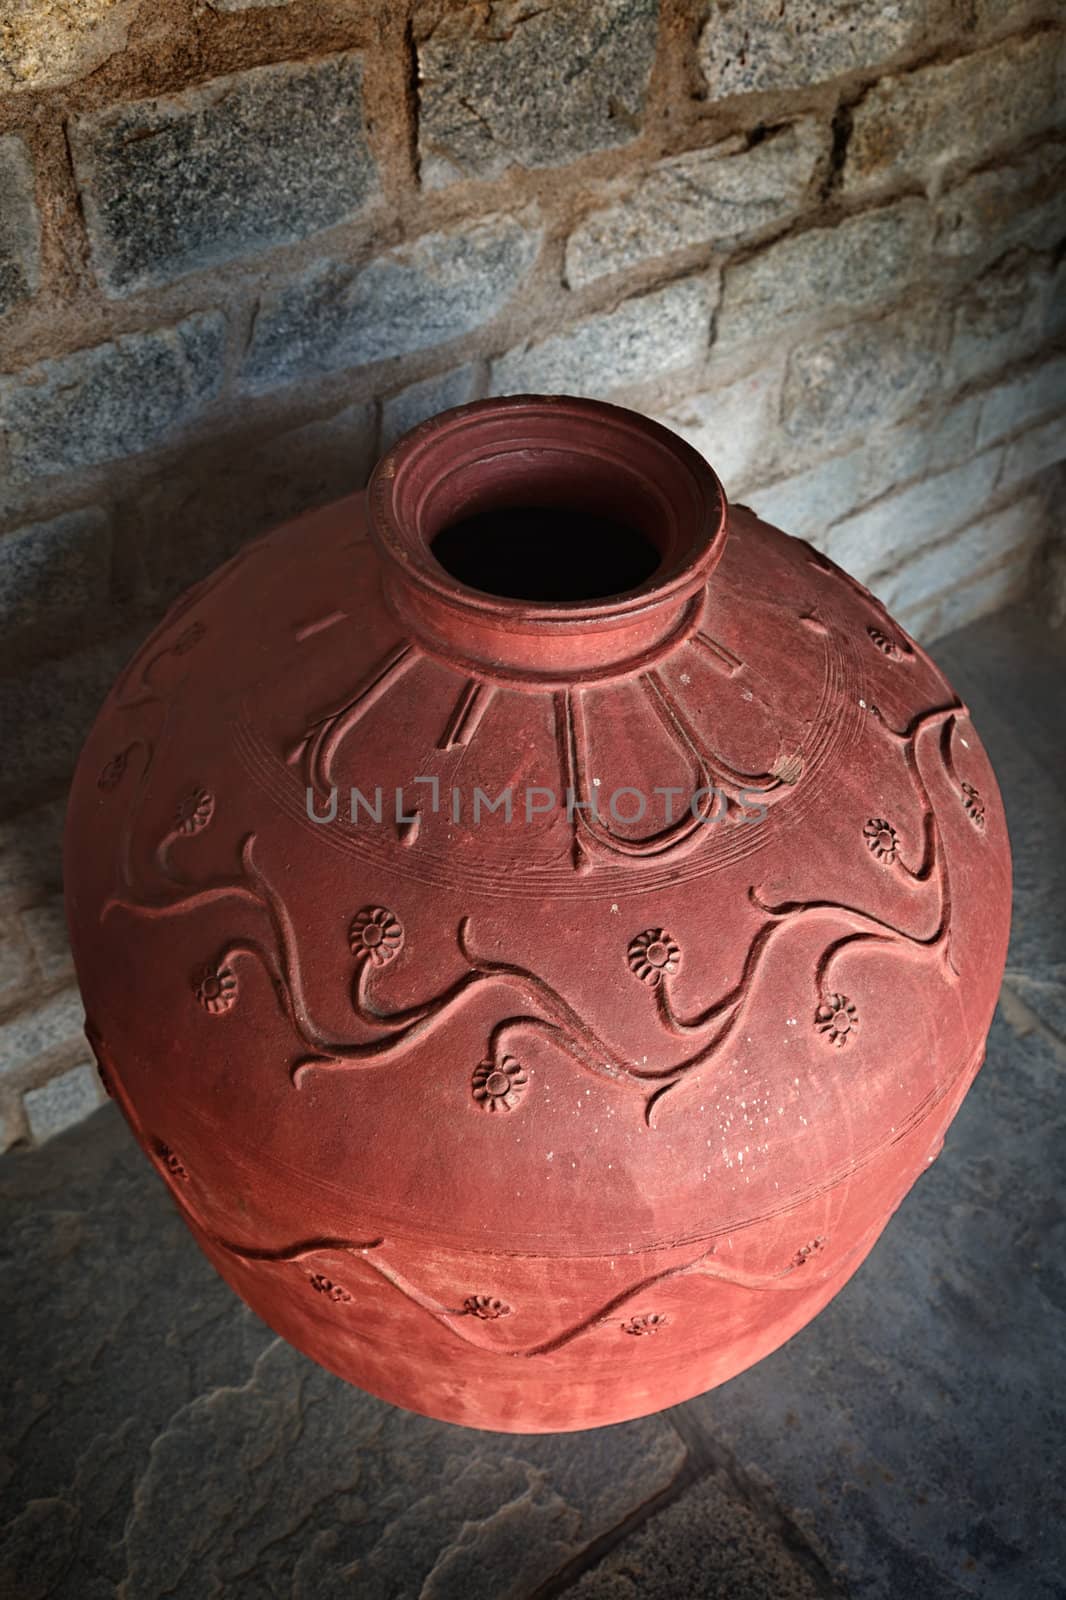 Clay jar by dimol